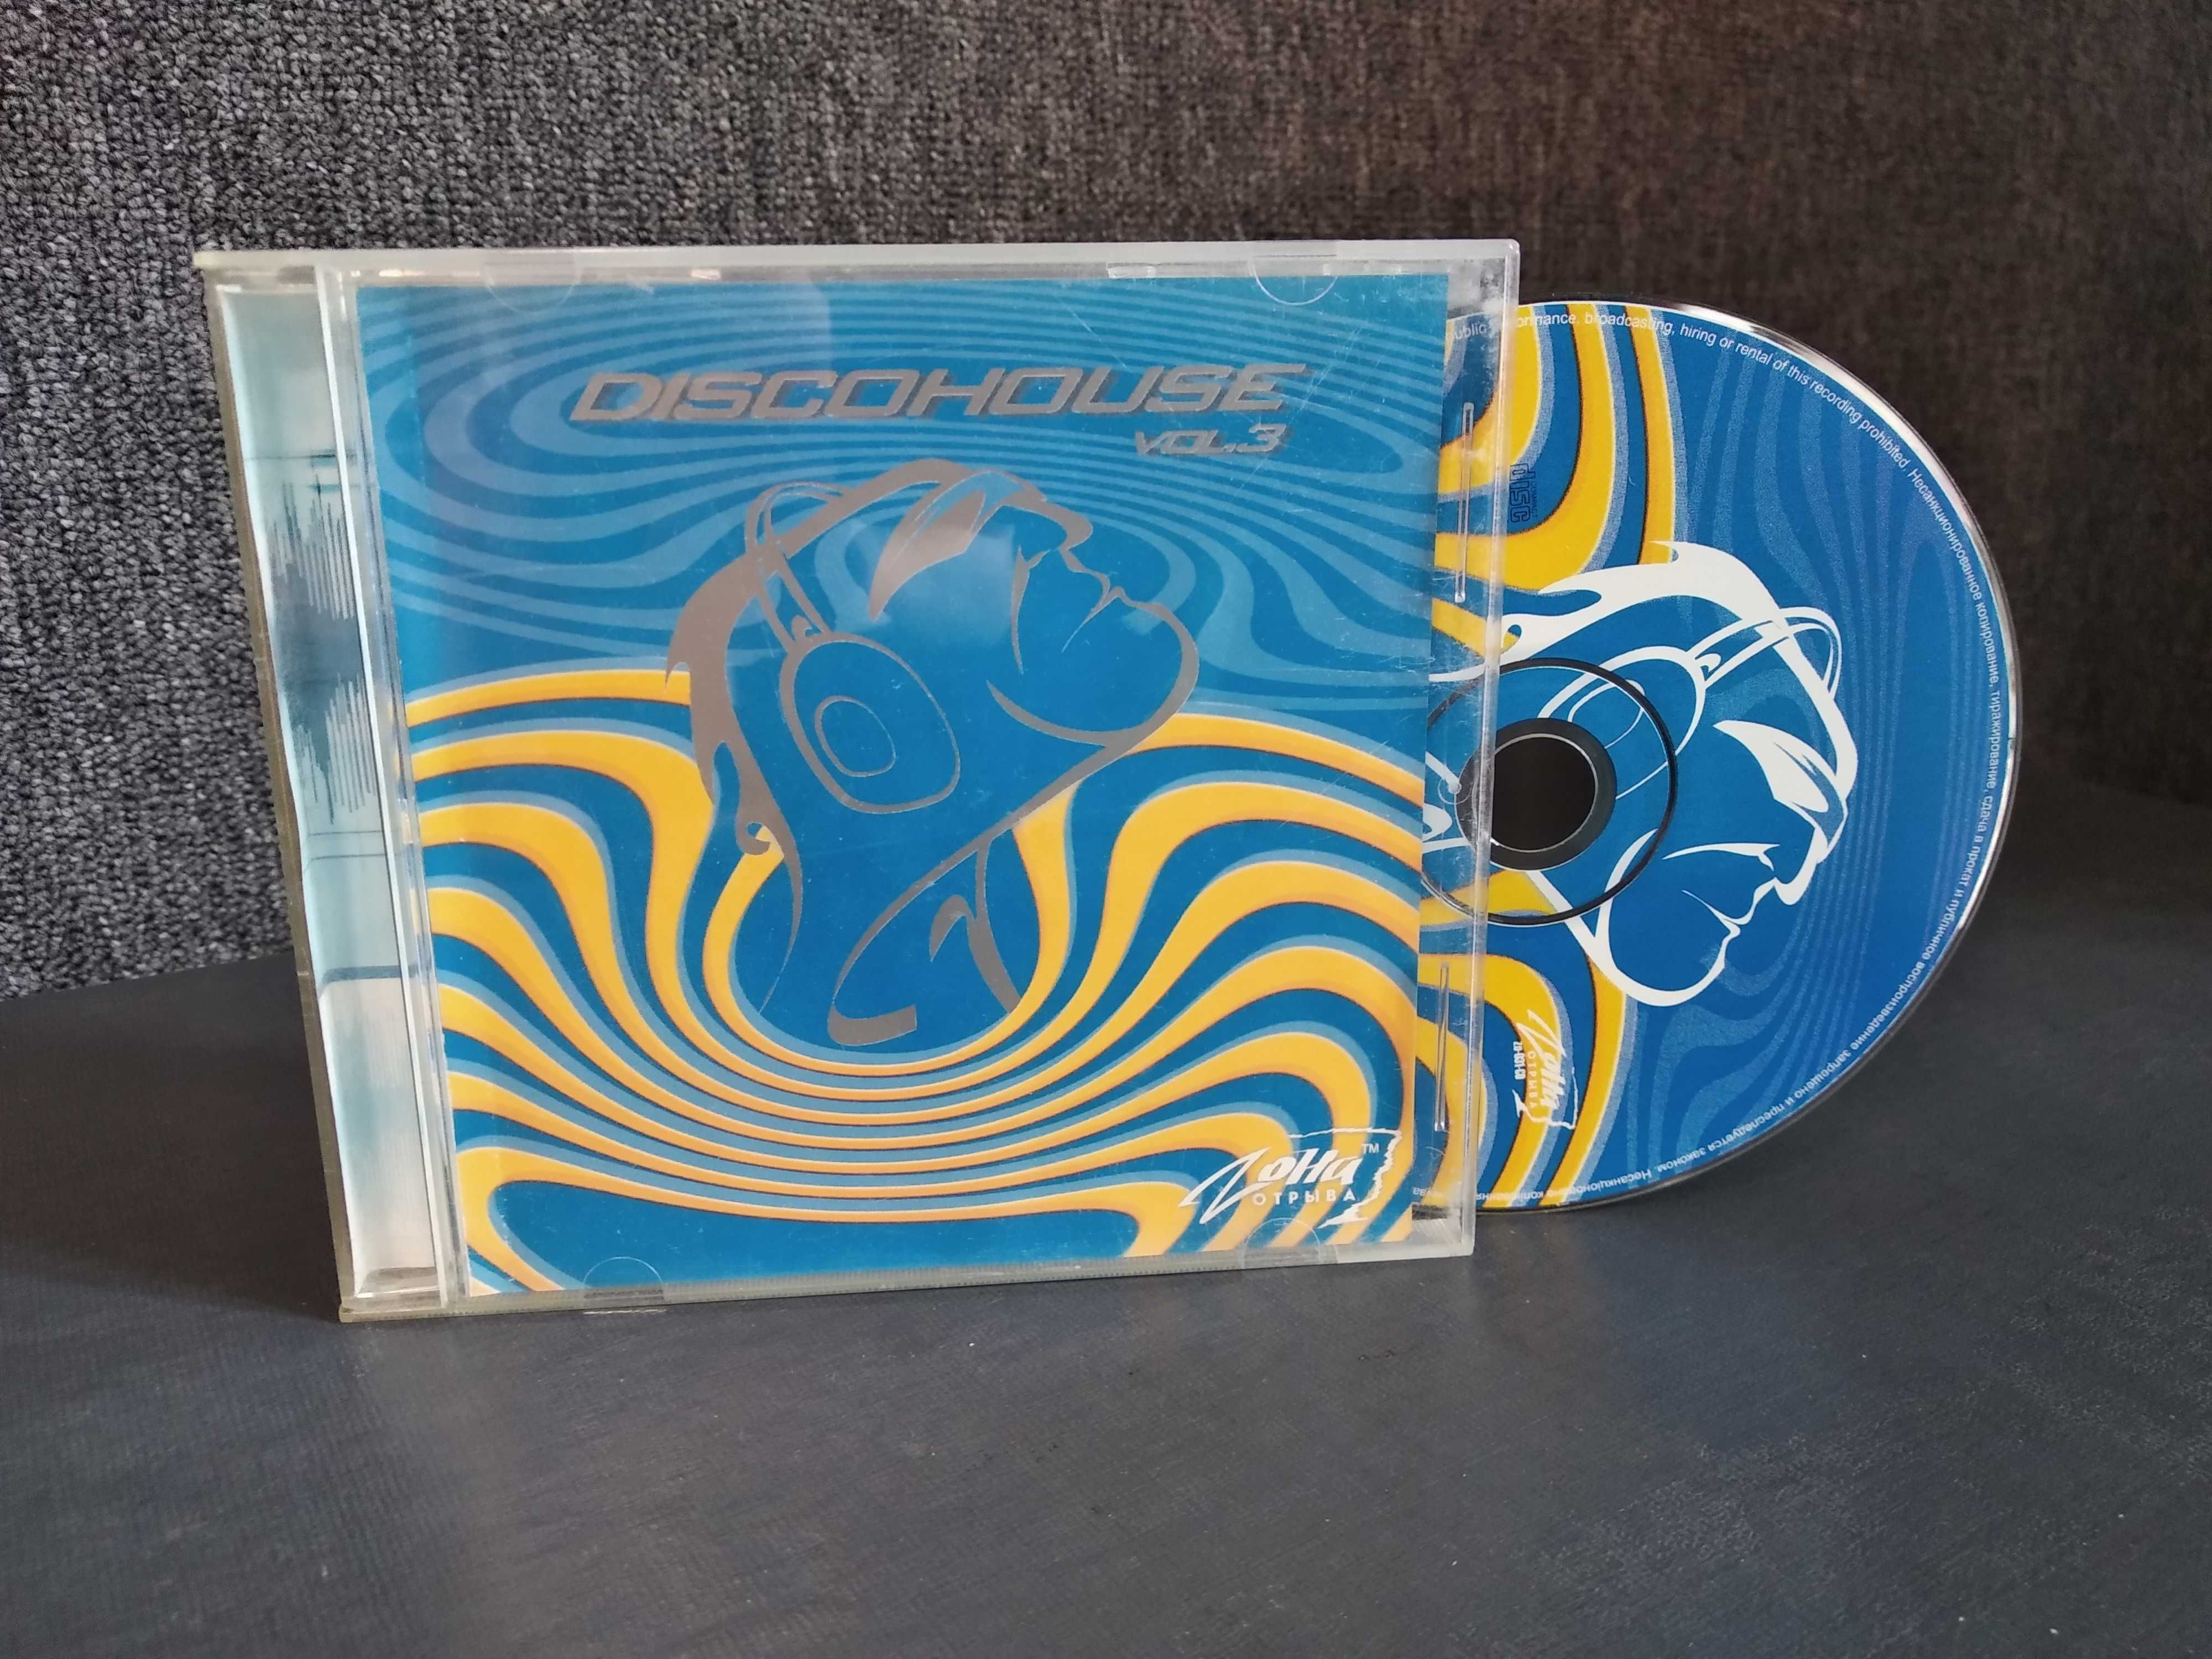 Диск DJ Бинокль - Discohouse vol. 3 (2002) Zона Отрыва, house music